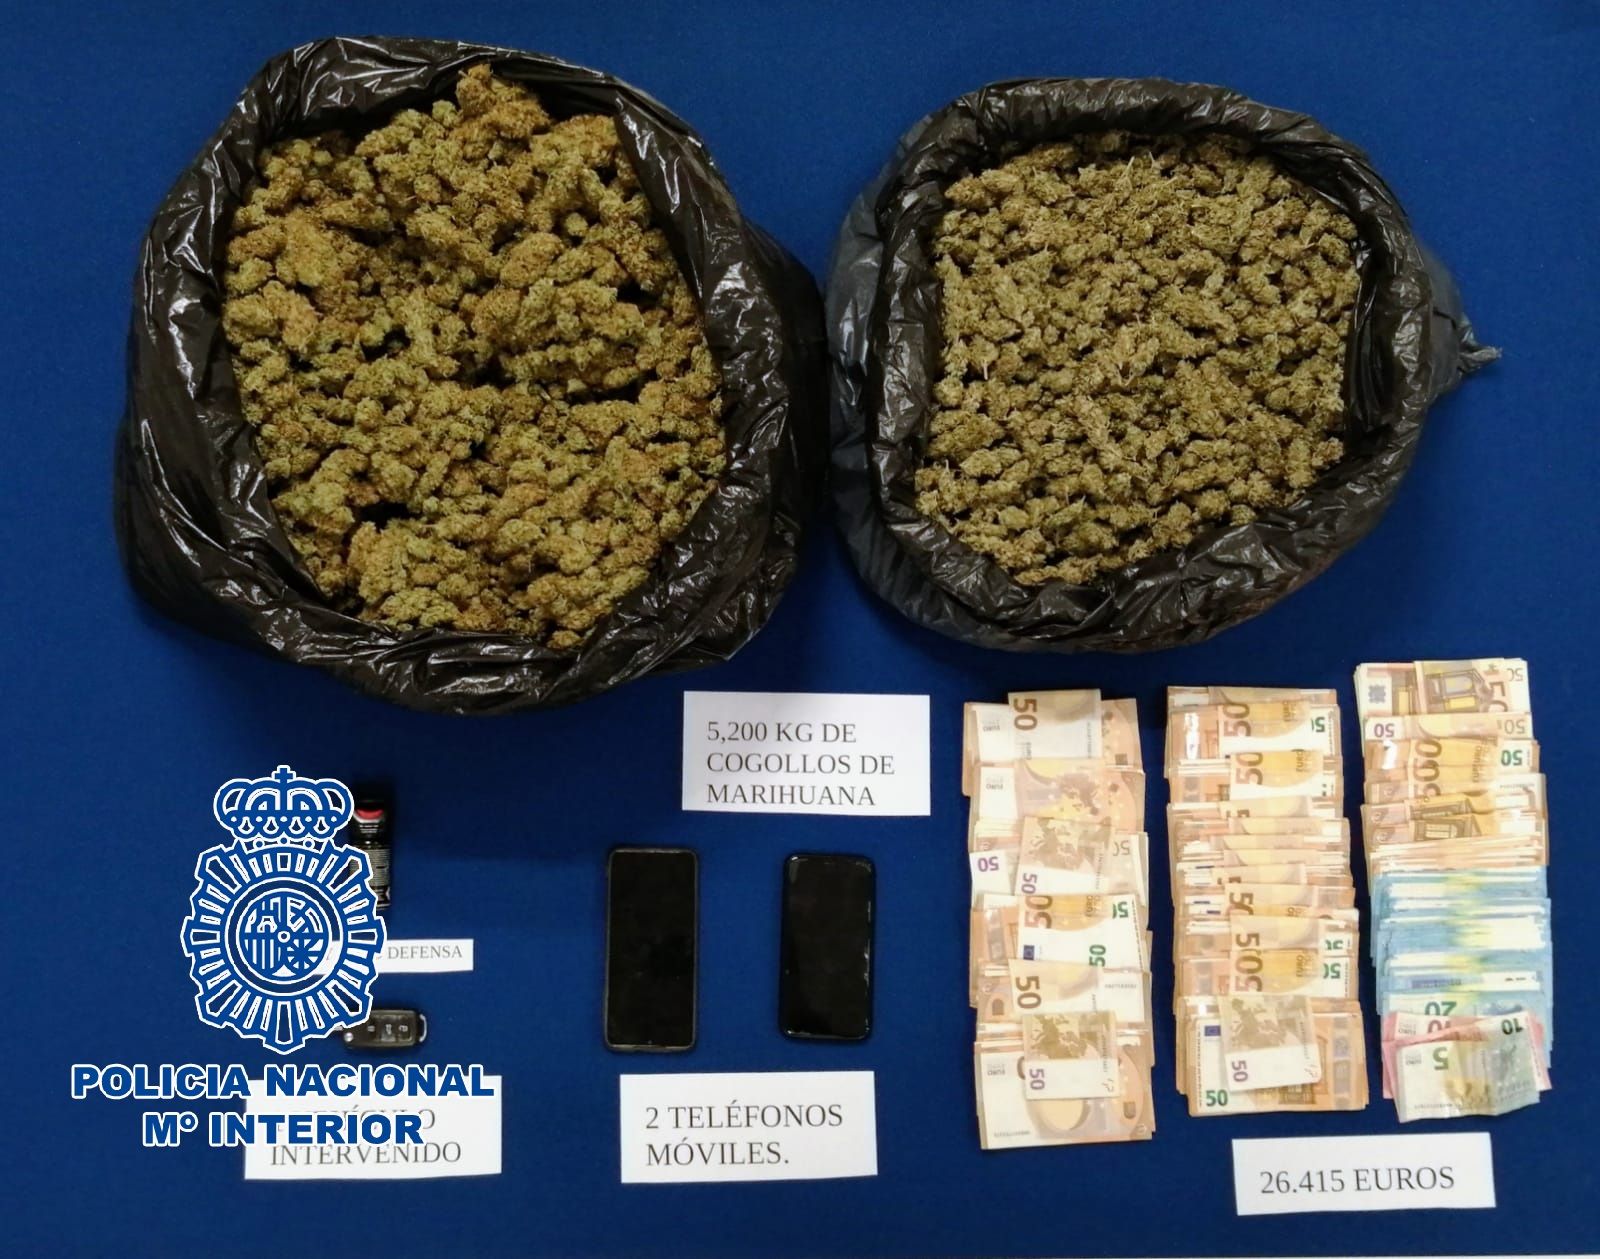 Agrede a un policía cuando iba a detenerle por tráfico de marihuana en el barrio del 'Mopu' en Jerez.